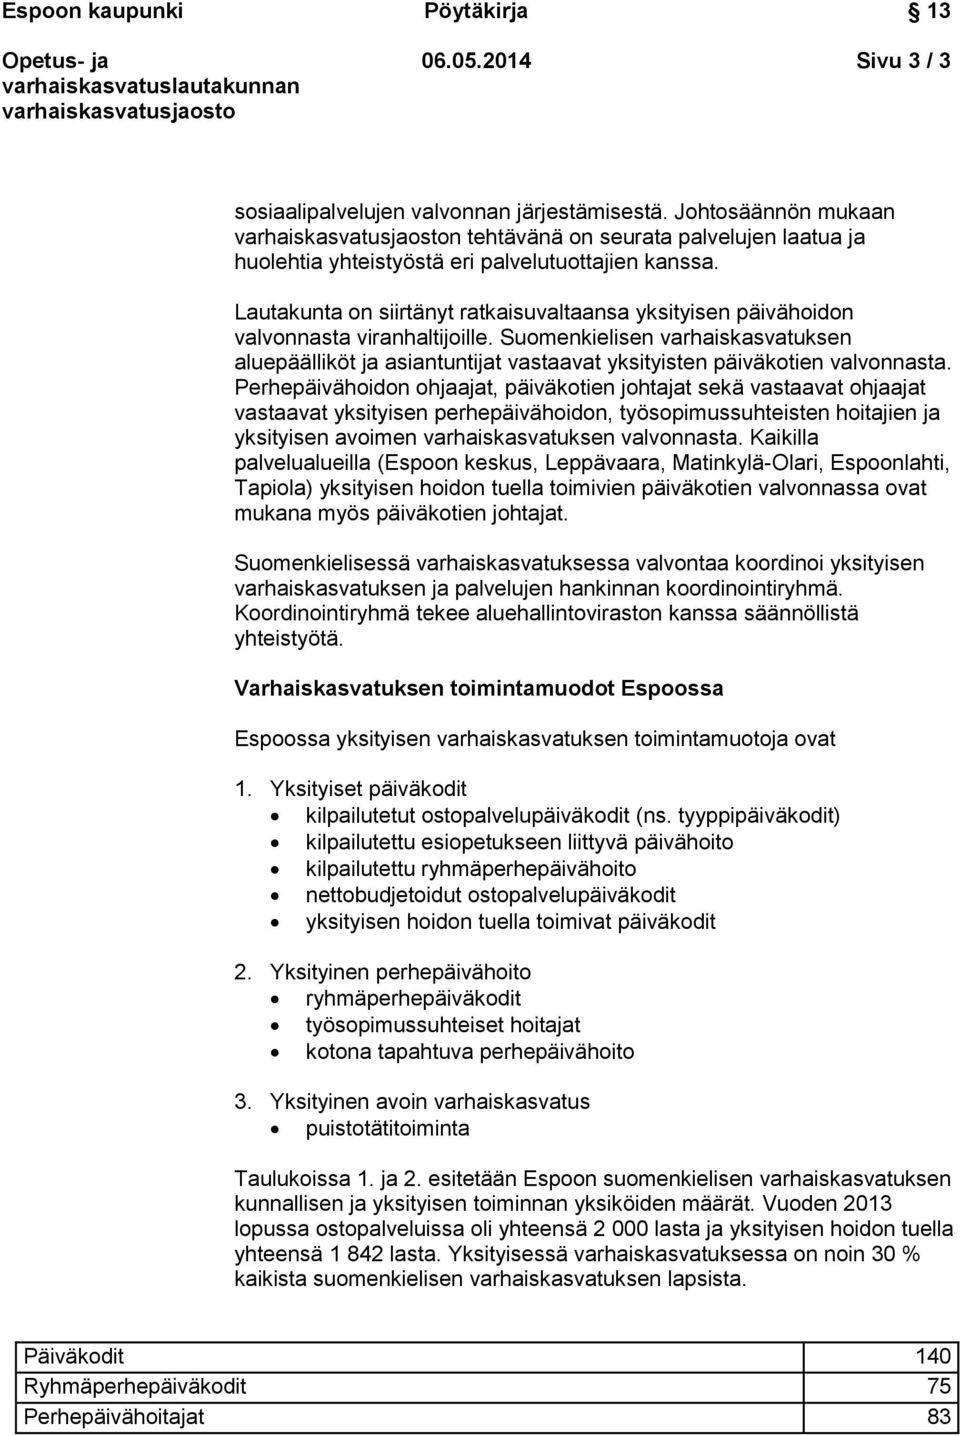 Suomenkielisen varhaiskasvatuksen aluepäälliköt ja asiantuntijat vastaavat yksityisten päiväkotien valvonnasta.